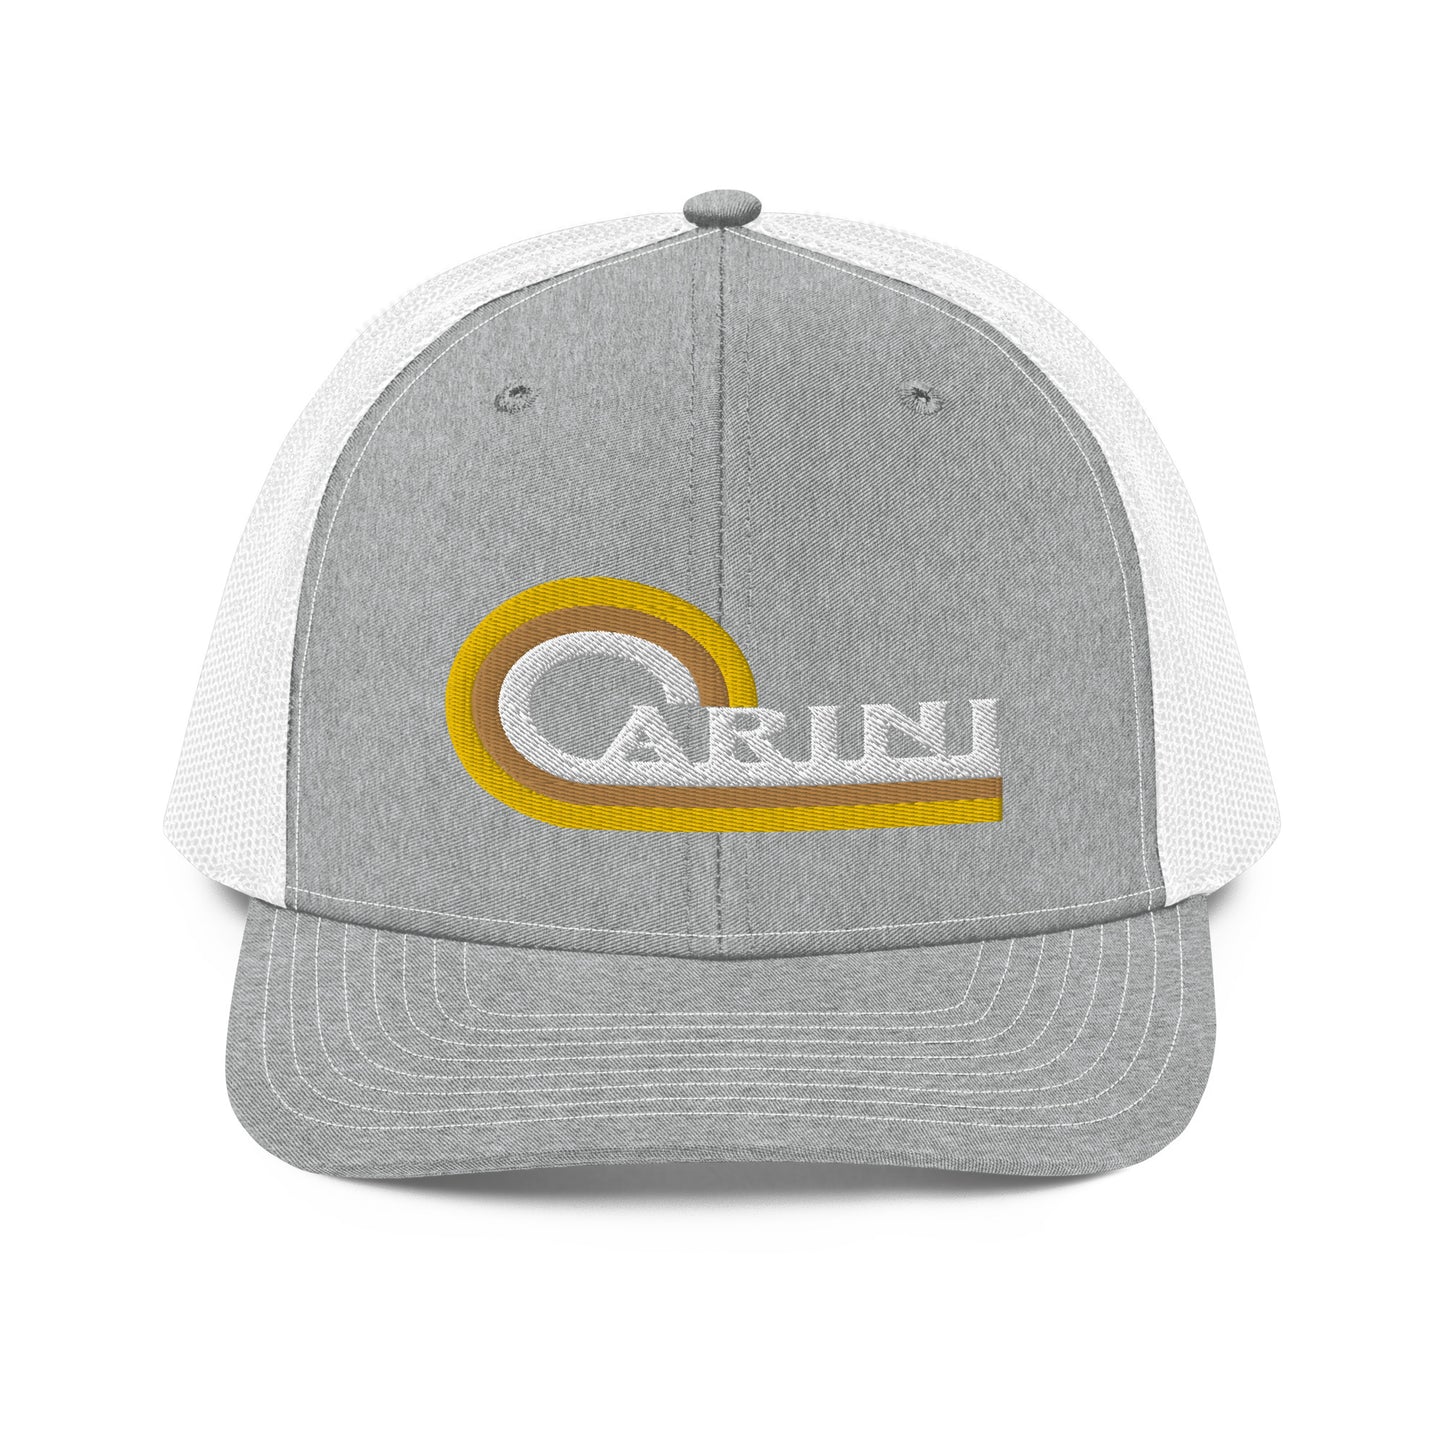 Carini Embroidery 112 Snapback Cap